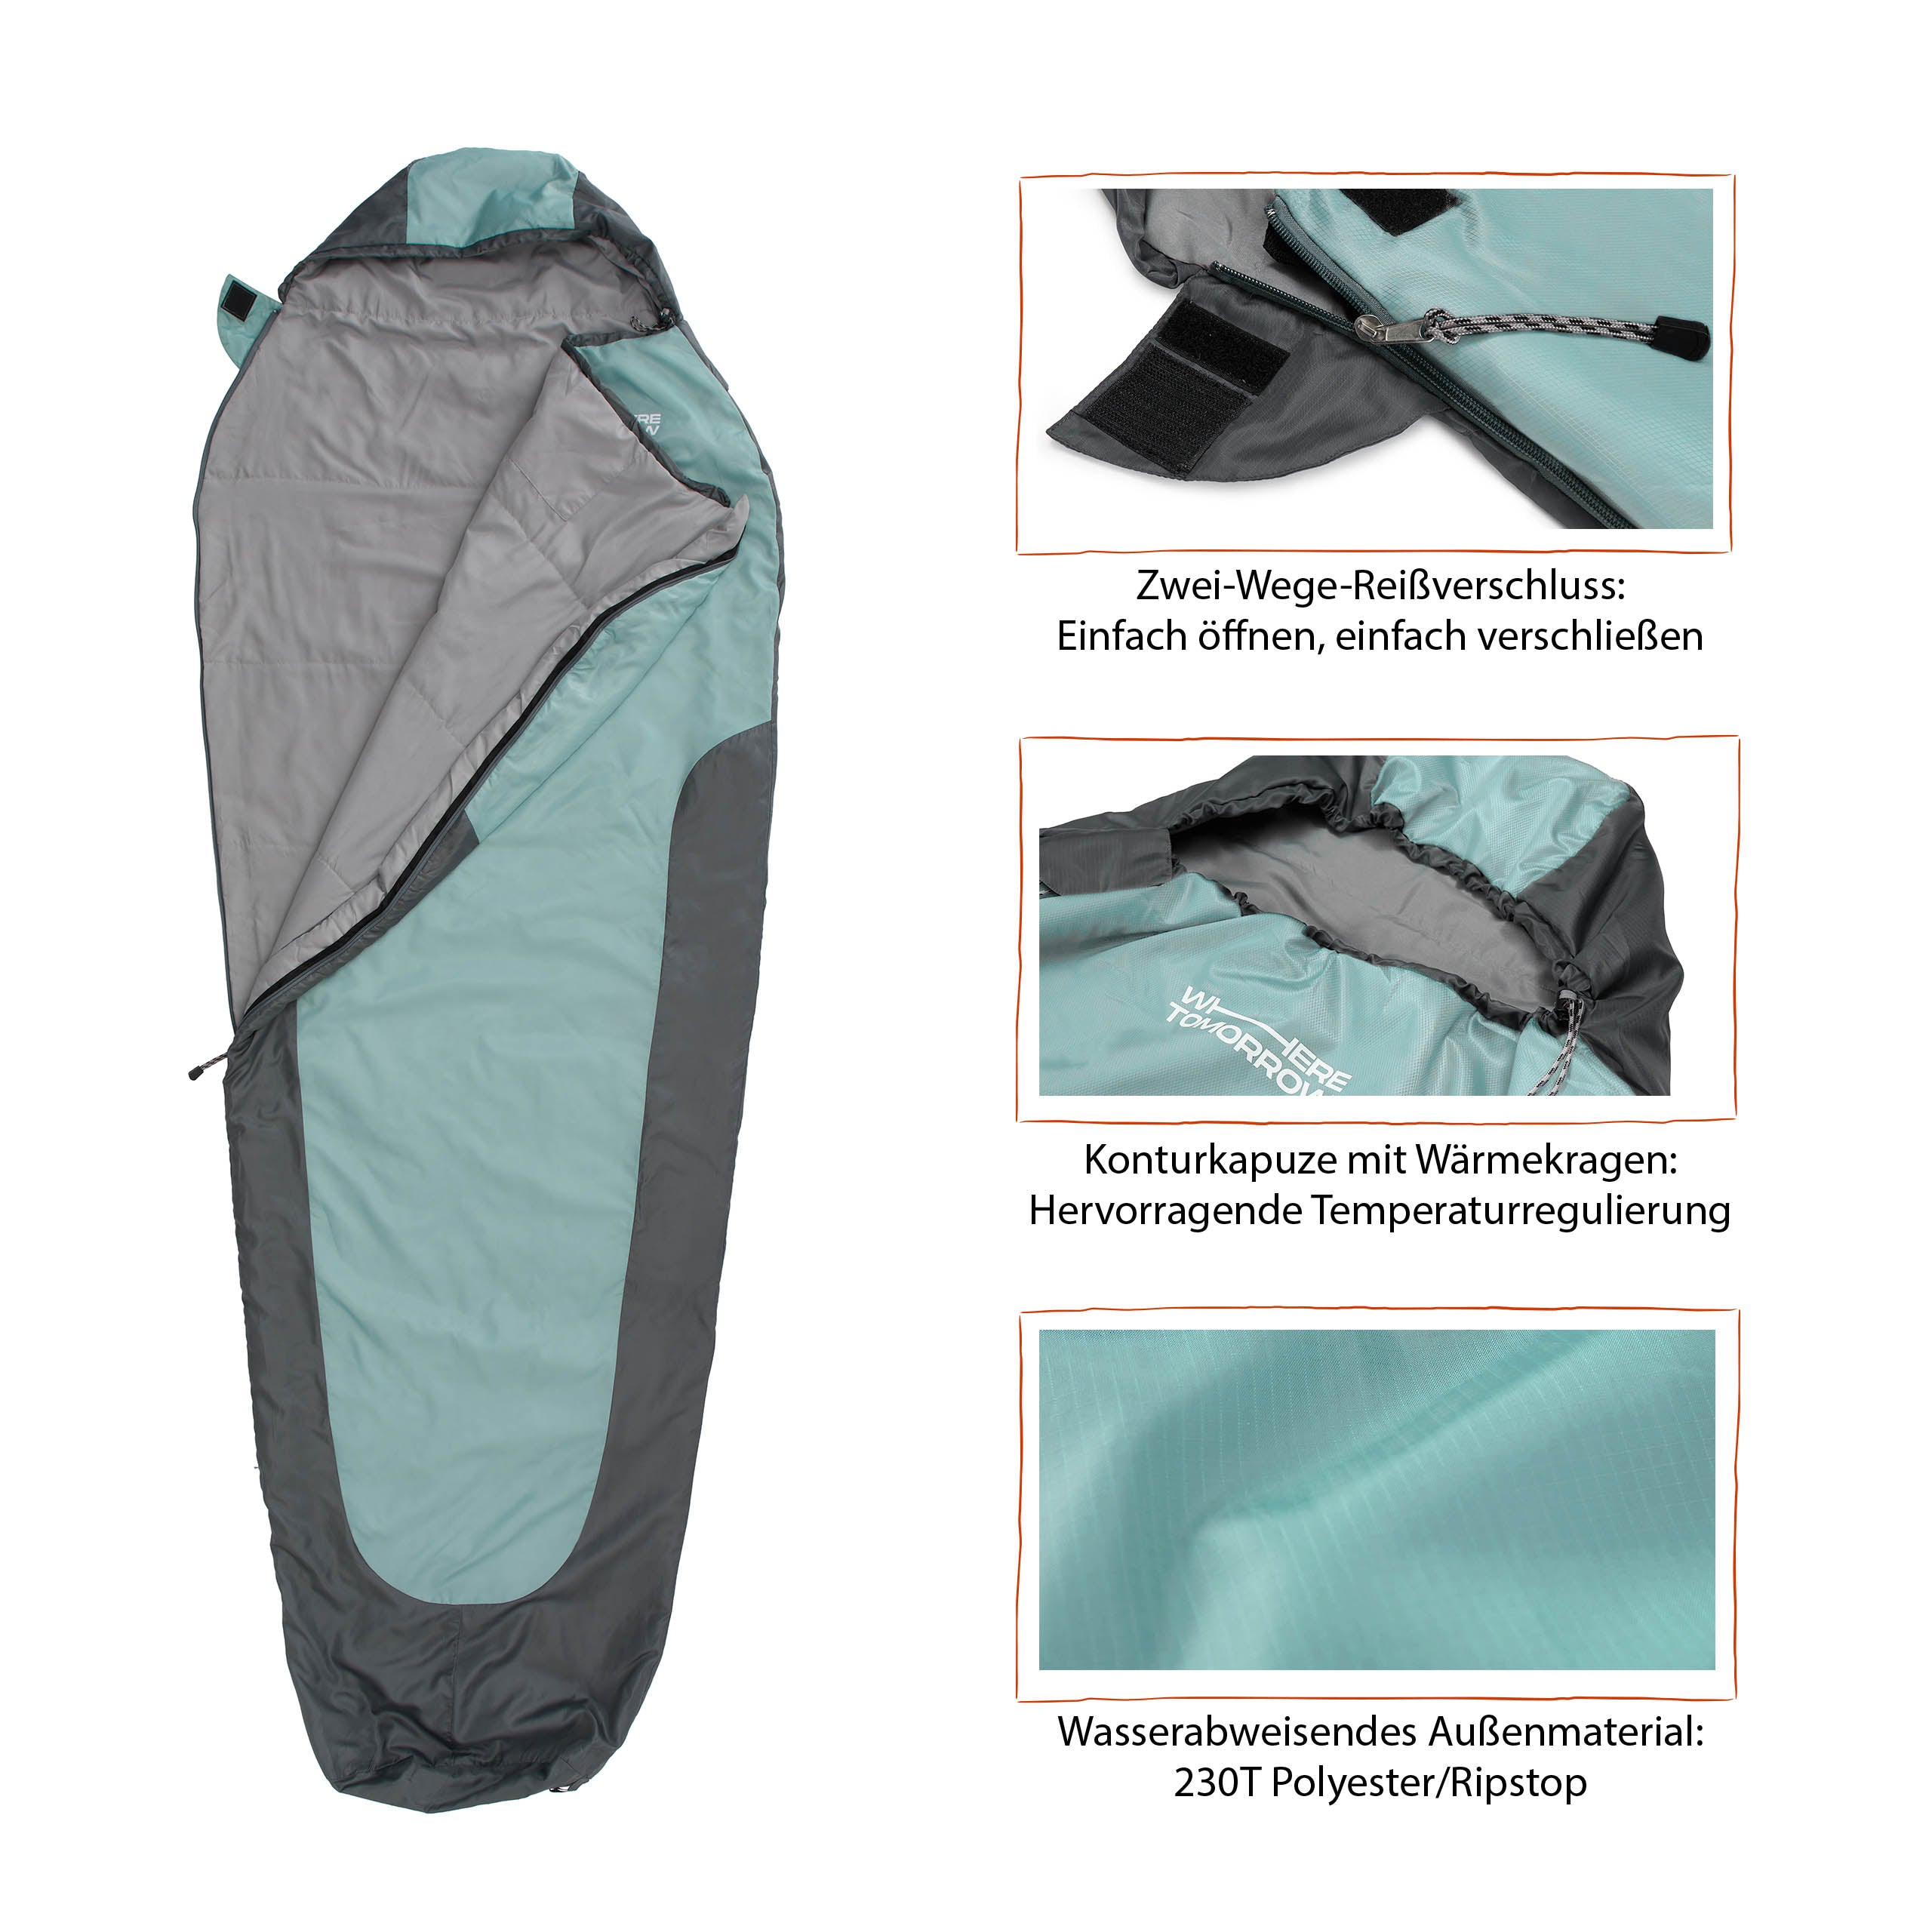 Schlafsack Small & Light - Mumienschlafsack mit Tasche - 220 x 80 x 50 cm - Hellblau-Grau